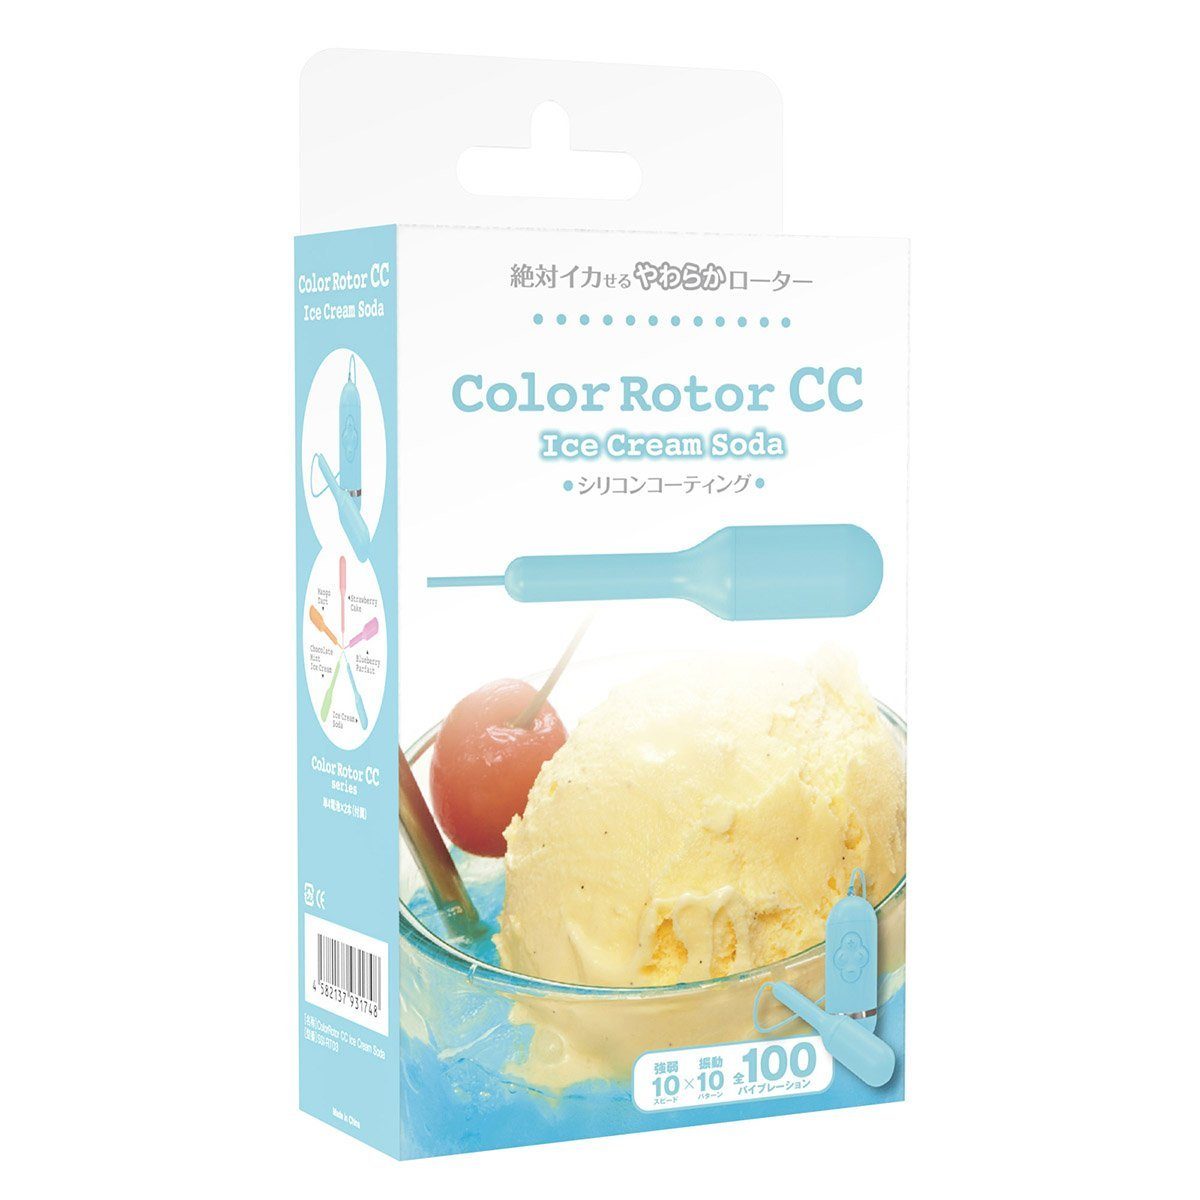 SSI JAPAN Color Rotor CC 雪糕梳打有線震蛋 有線震蛋 購買